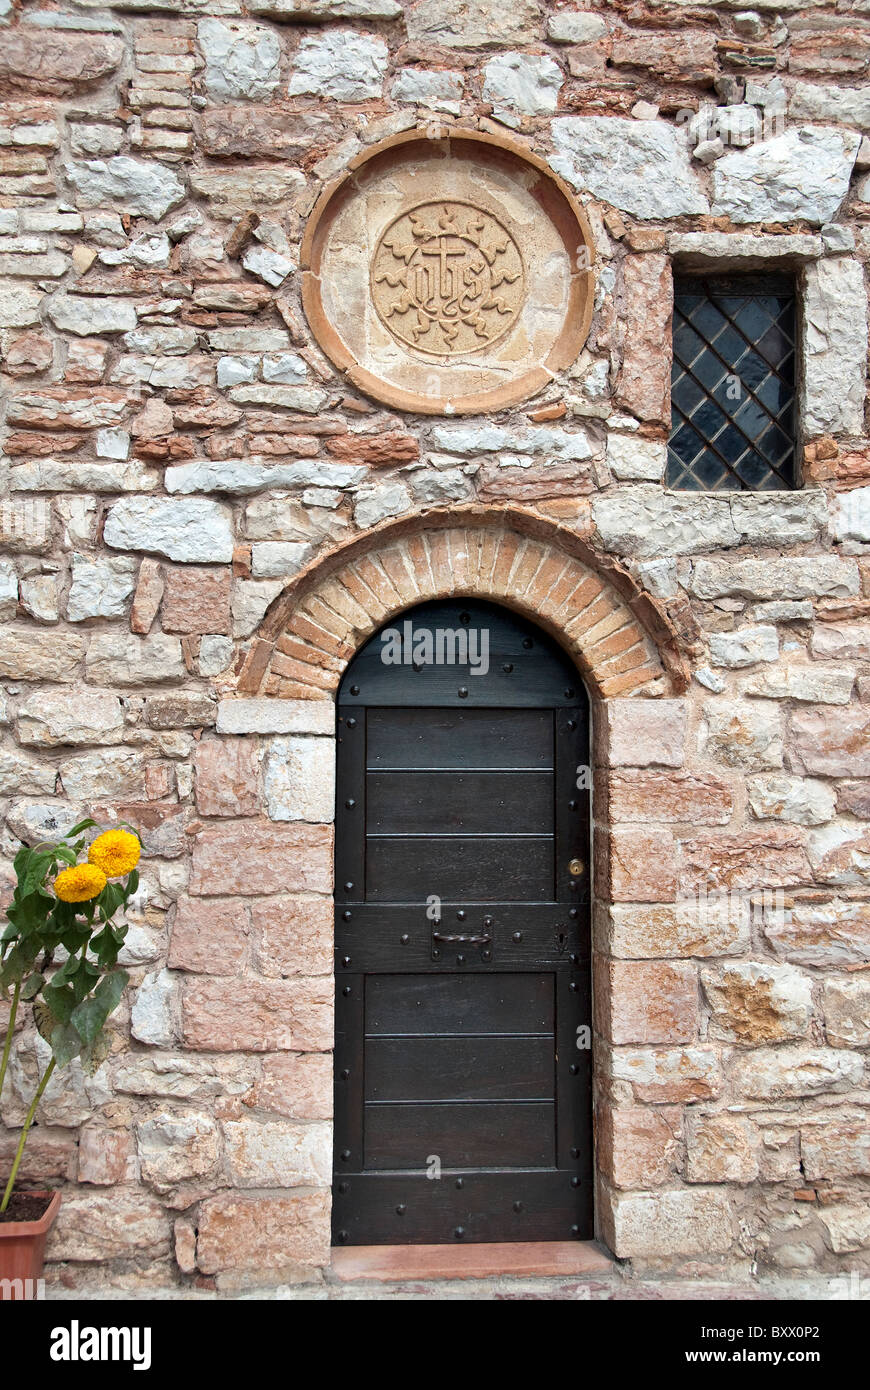 Convento Eremo delle Carceri in Assisi, Umbria Italy Stock Photo